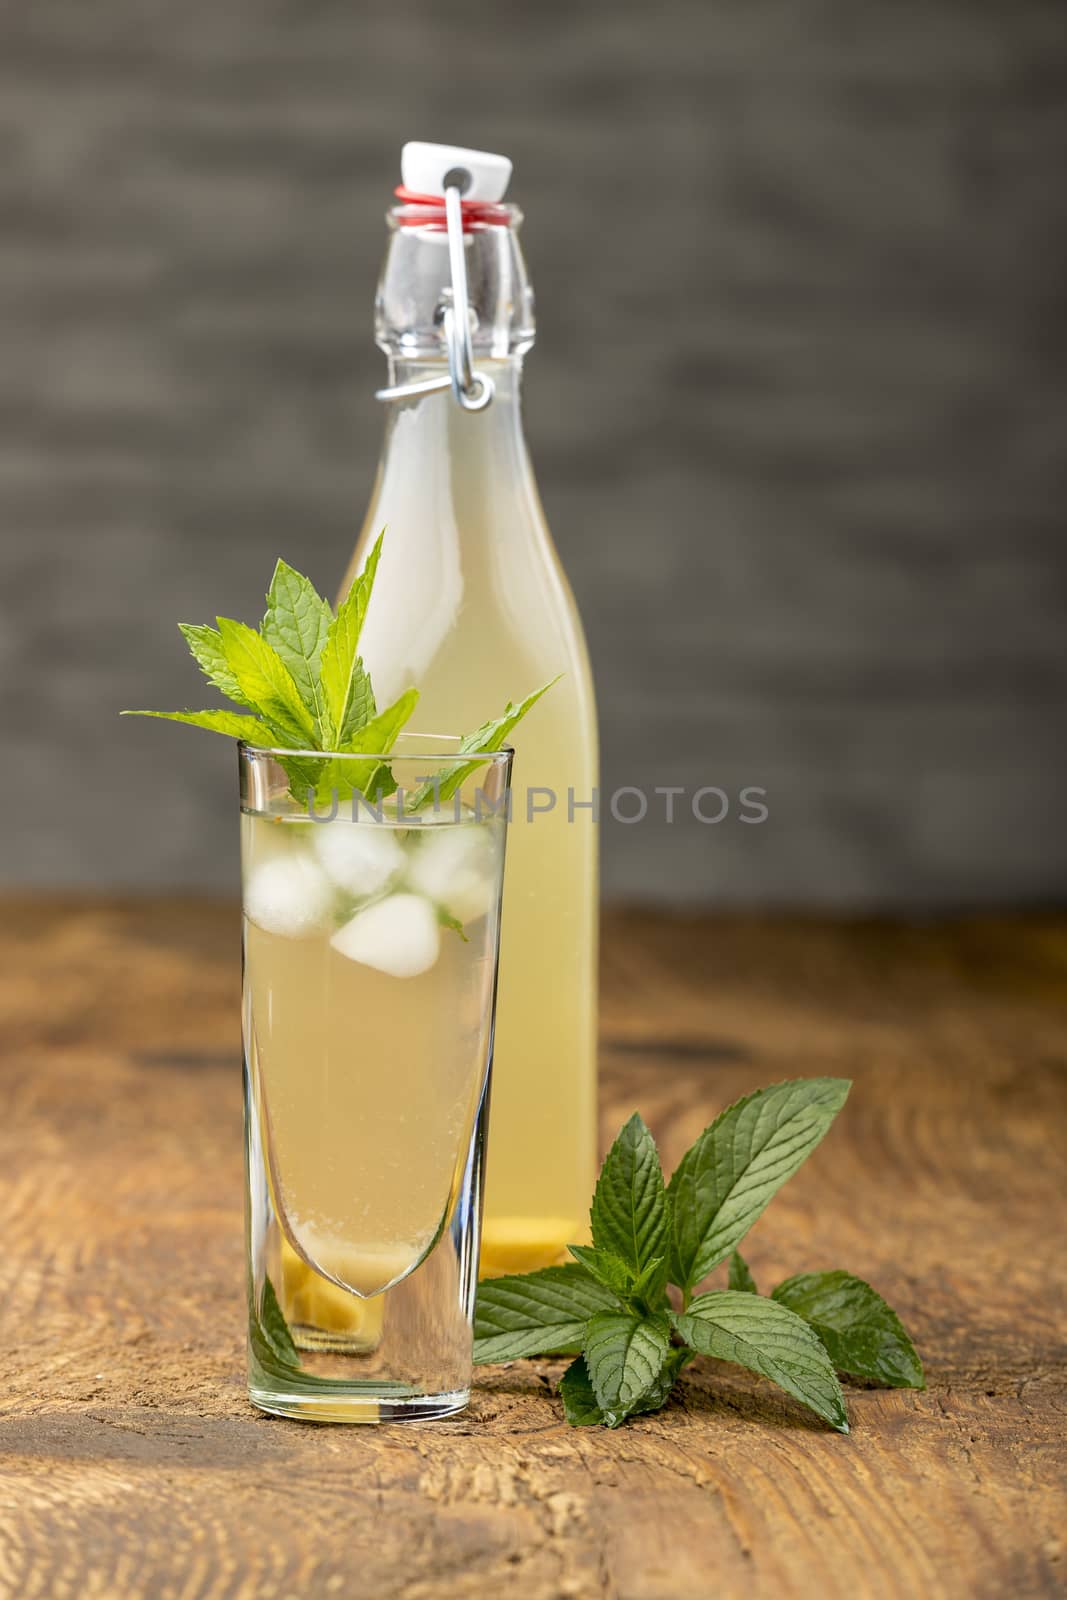 homemade ginger lemonade with mint leaves